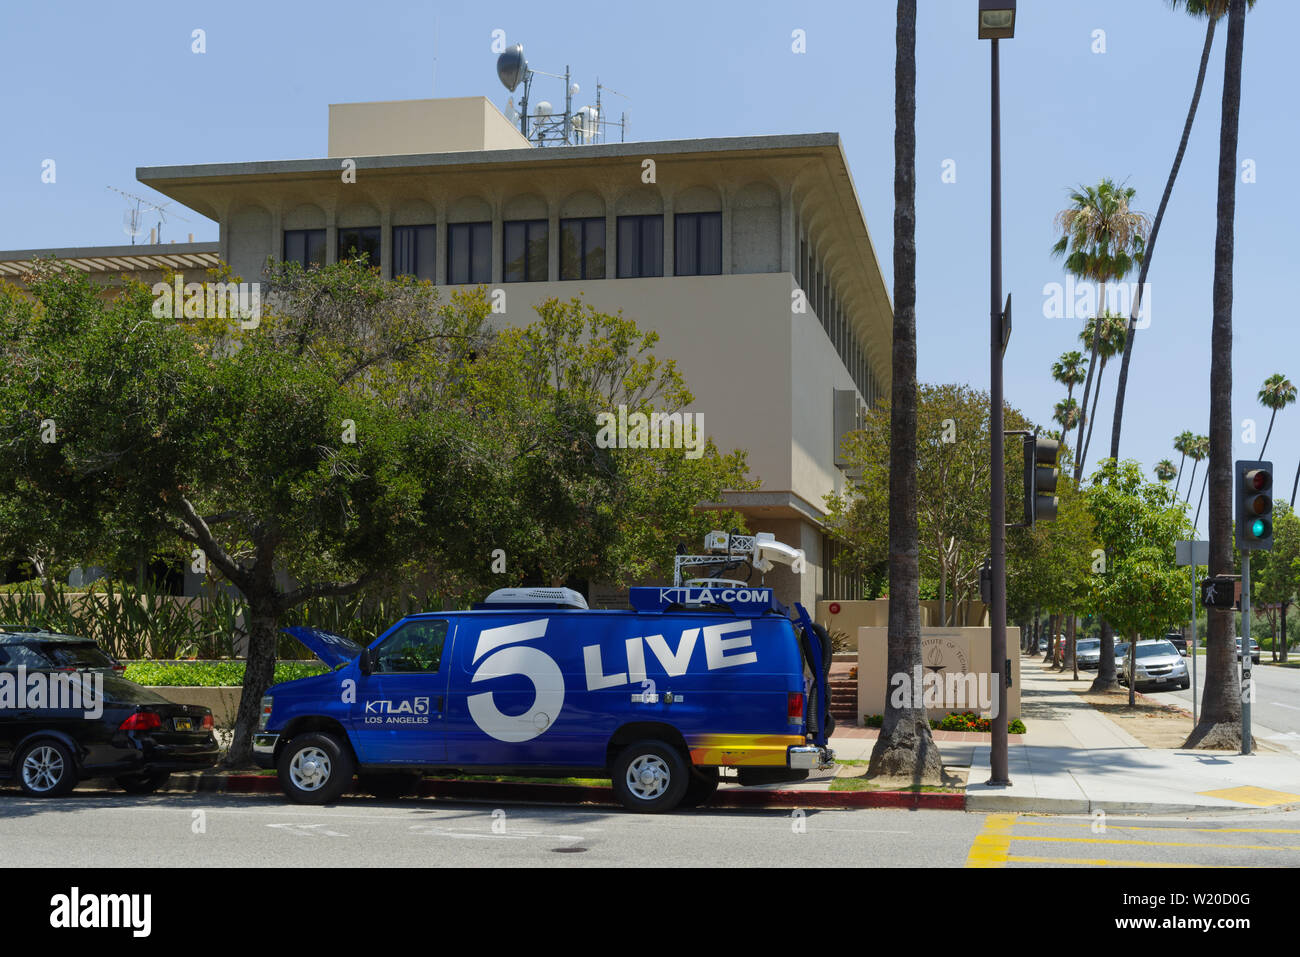 News Media cars à l'Institut technologique de Californie Seismological Laboratory après un séisme de magnitude 6,4 a frappé près de Piracicaba. Banque D'Images